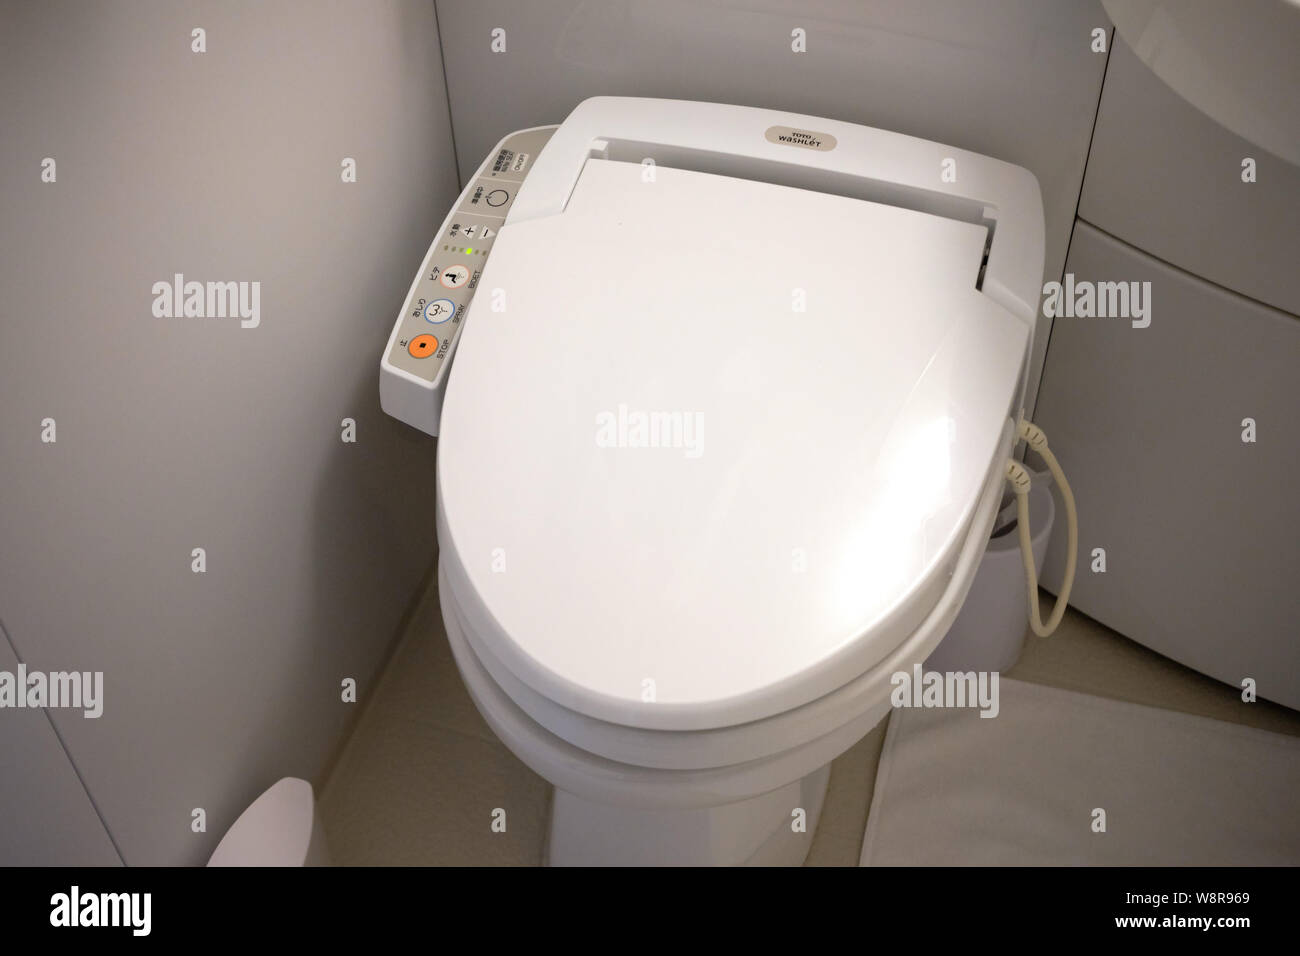 Tokio/Japan, 31. Juli 2019: Eine automatisierte WC im Badezimmer in Japan. Stockfoto